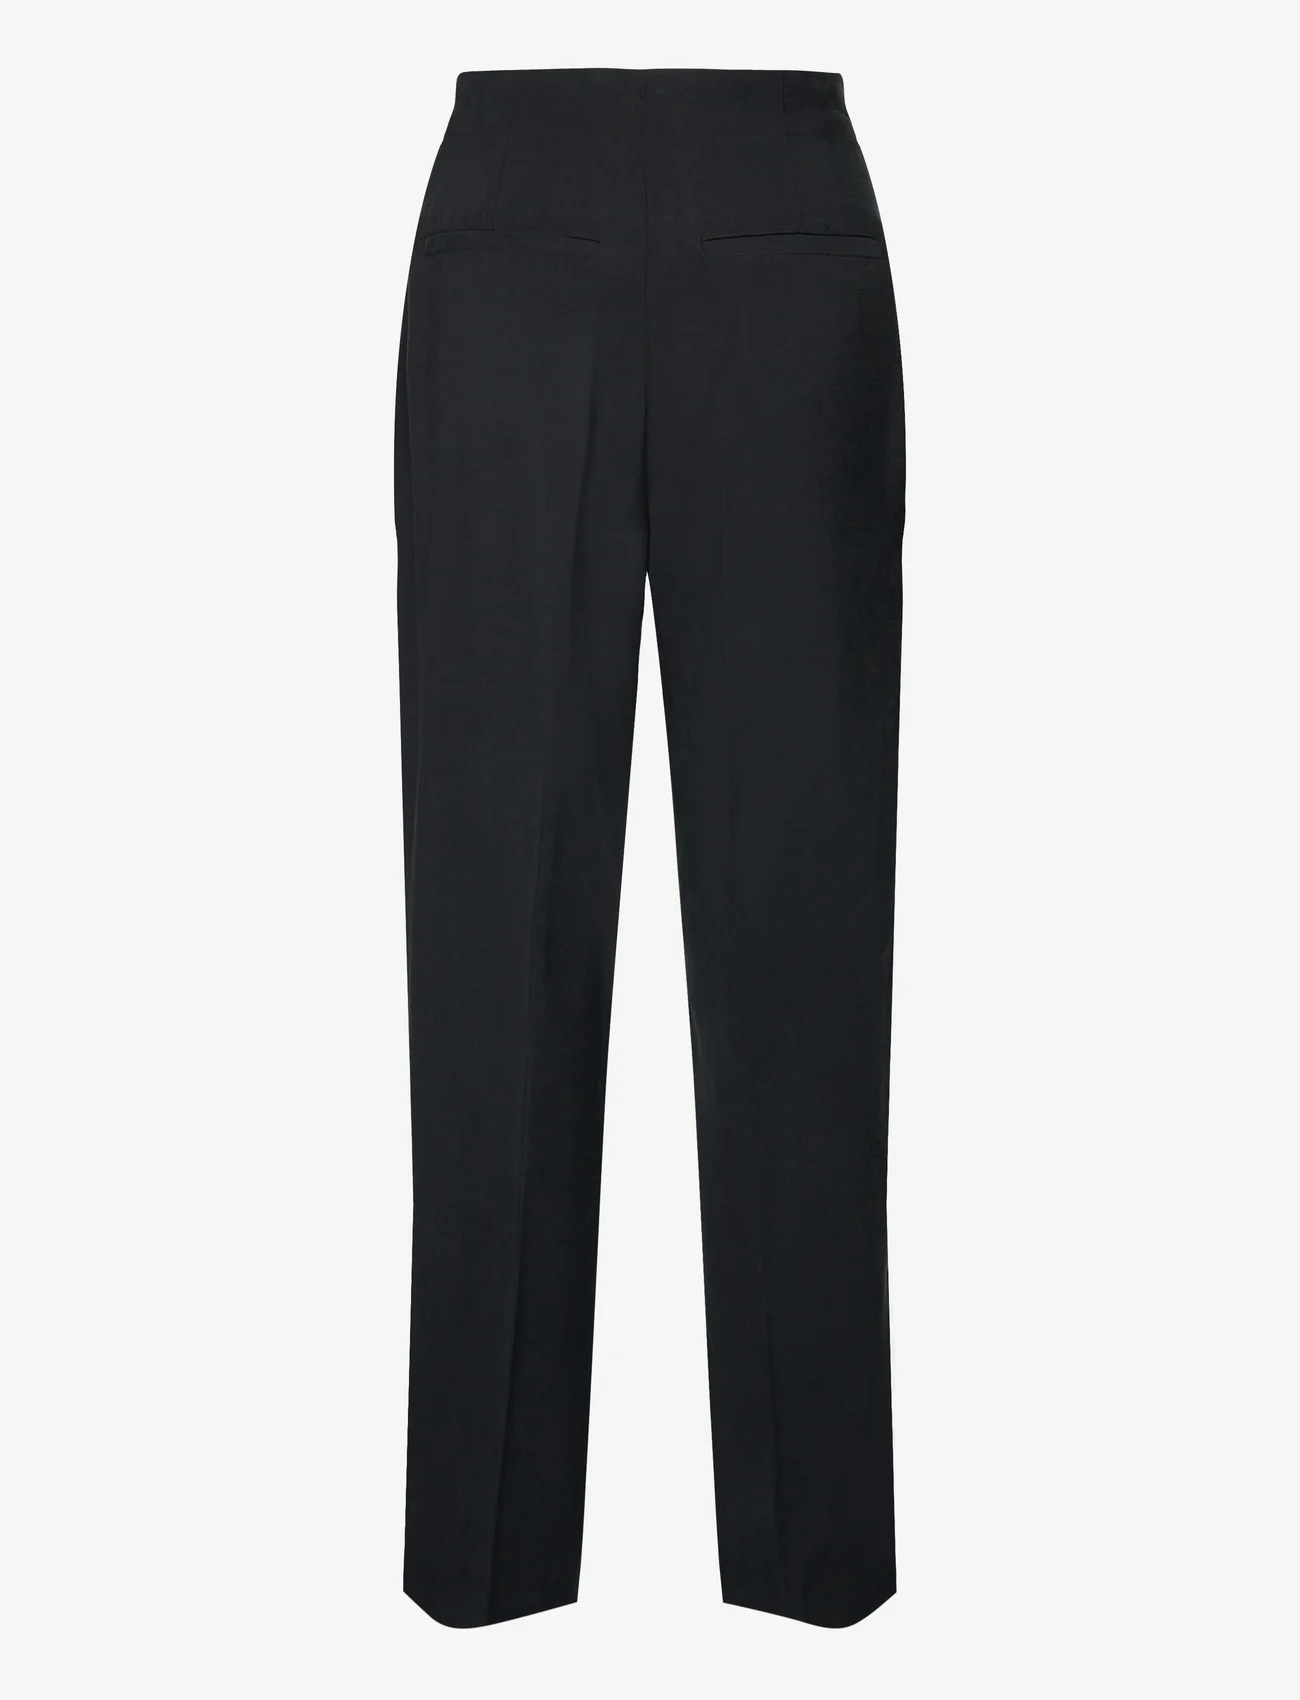 MSCH Copenhagen - MSCHMadeira Selia HW Pants - bukser med lige ben - black - 1